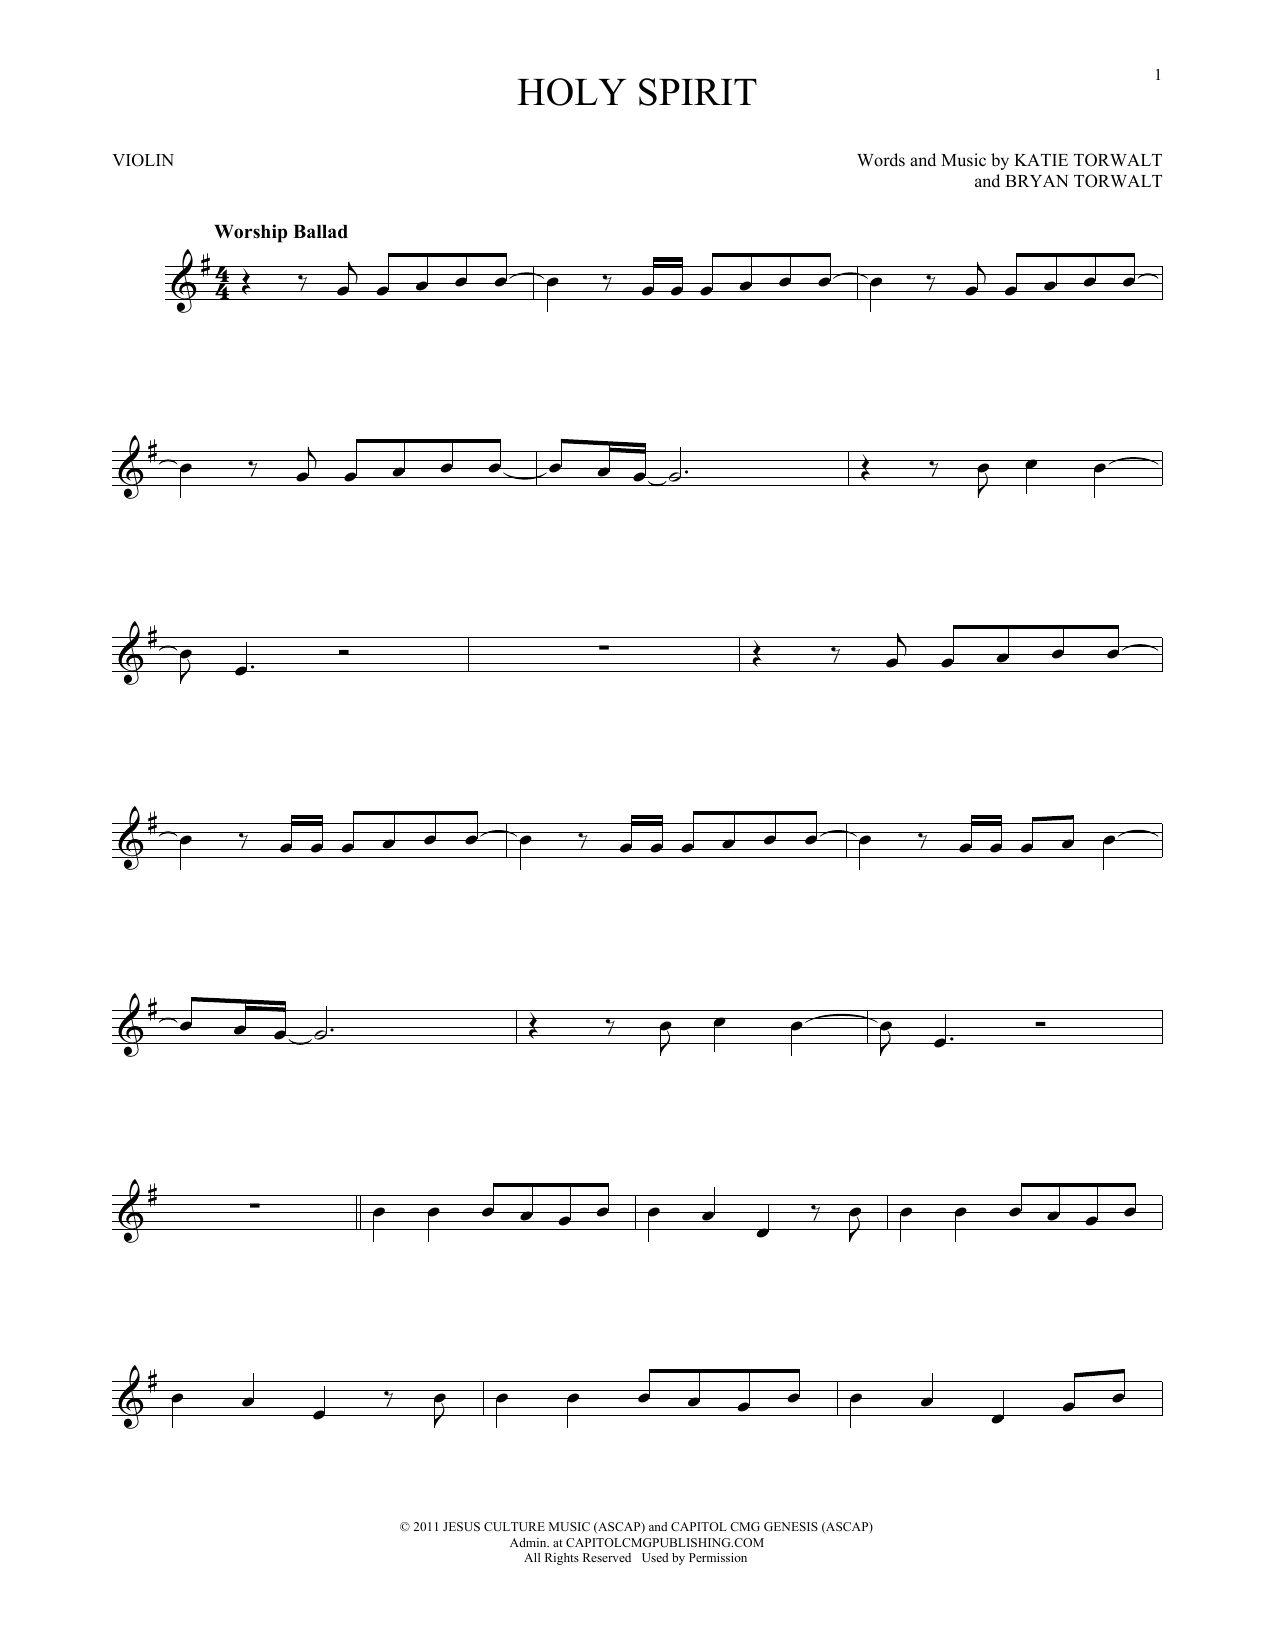 Bryan Torwalt Holy Spirit Sheet Music Notes & Chords for Lead Sheet / Fake Book - Download or Print PDF